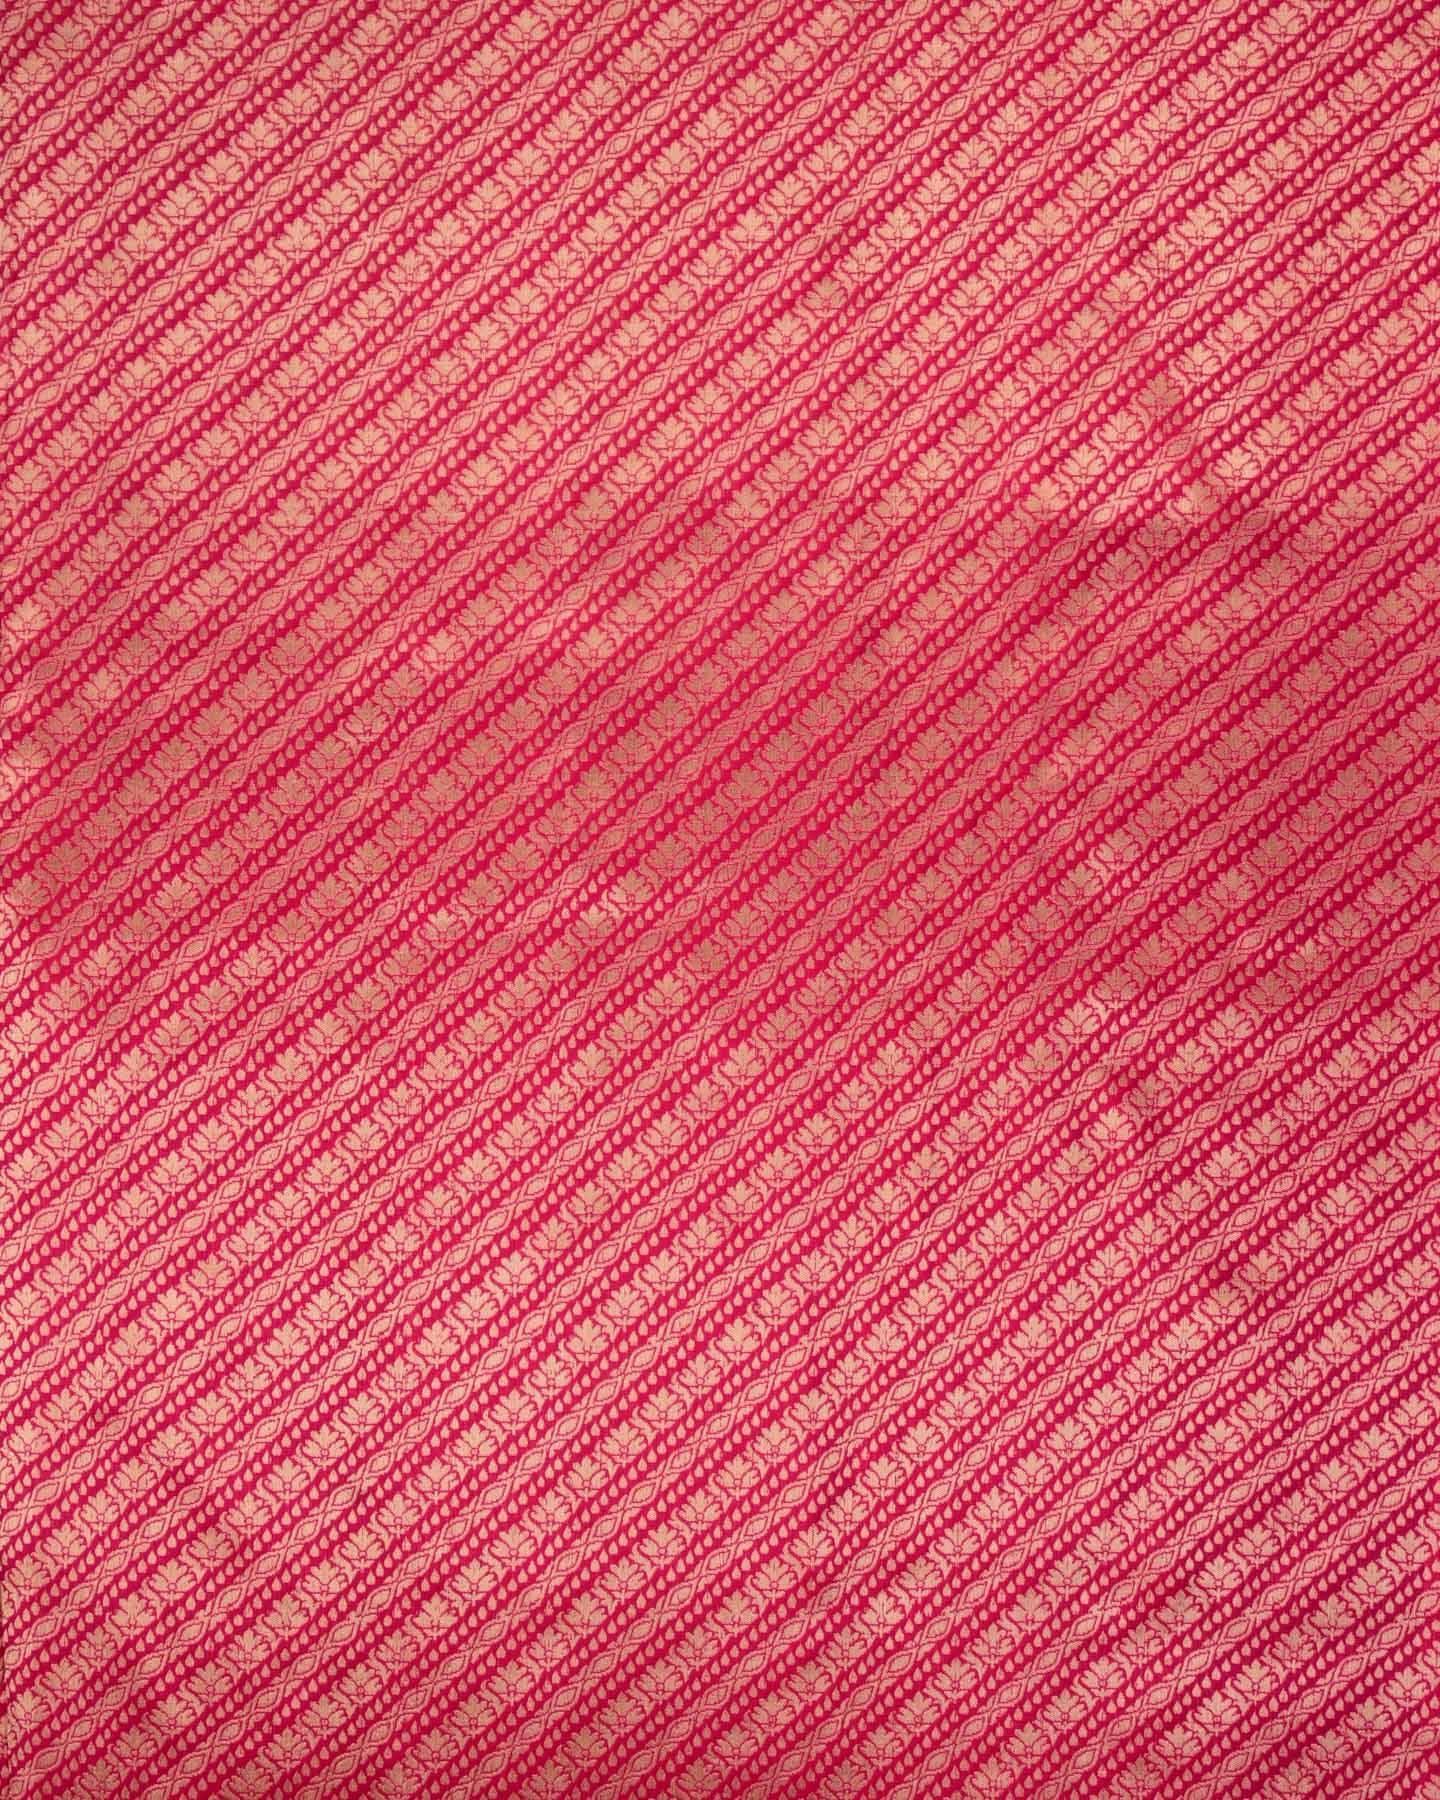 Metallic Red Banarasi Patola Cutwork Brocade Handwoven Katan Tissue Saree - By HolyWeaves, Benares